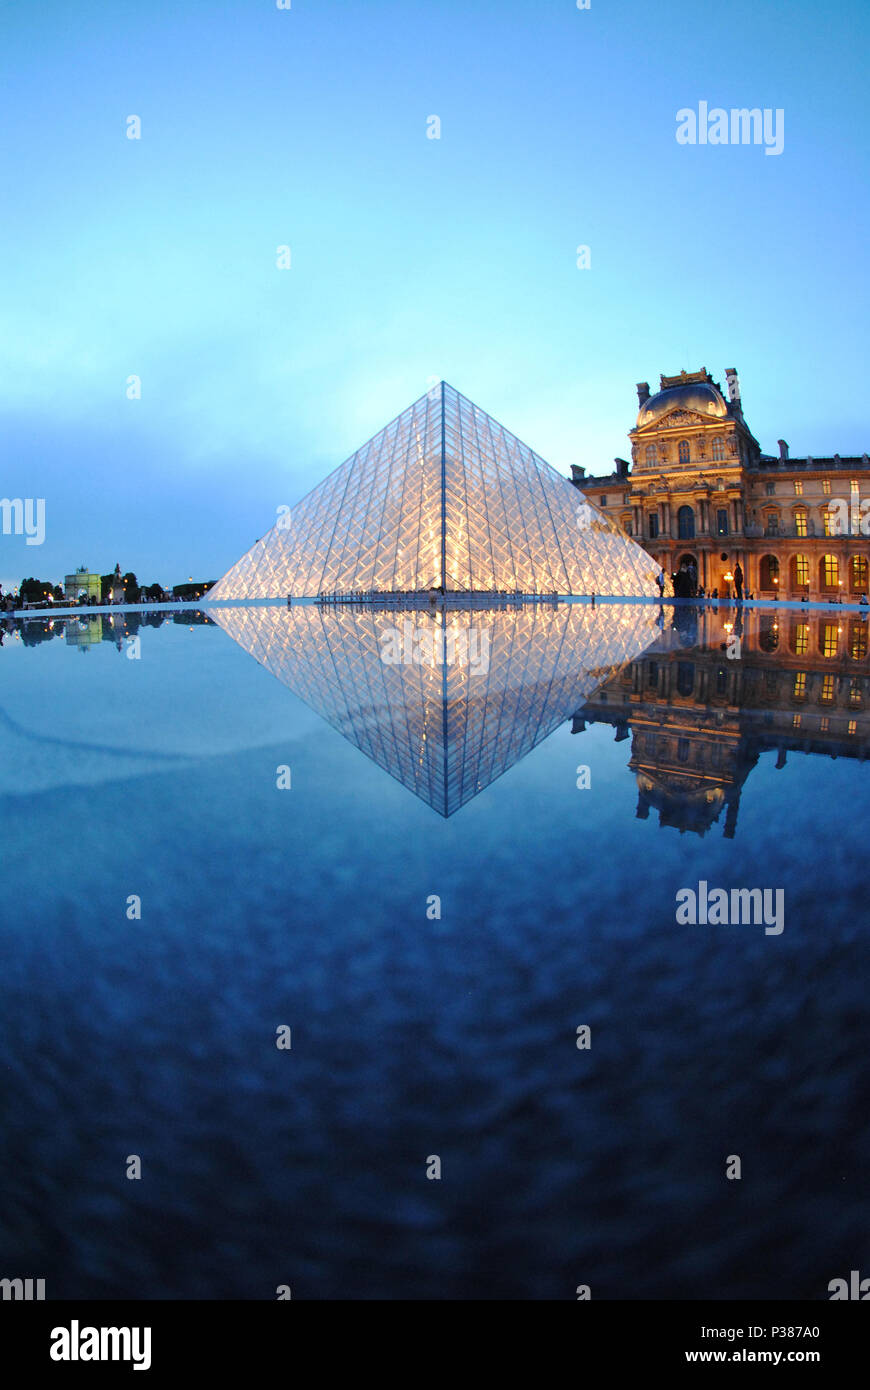 Blaue Stunde im Pariser Louvre in Frankreich. Stockfoto